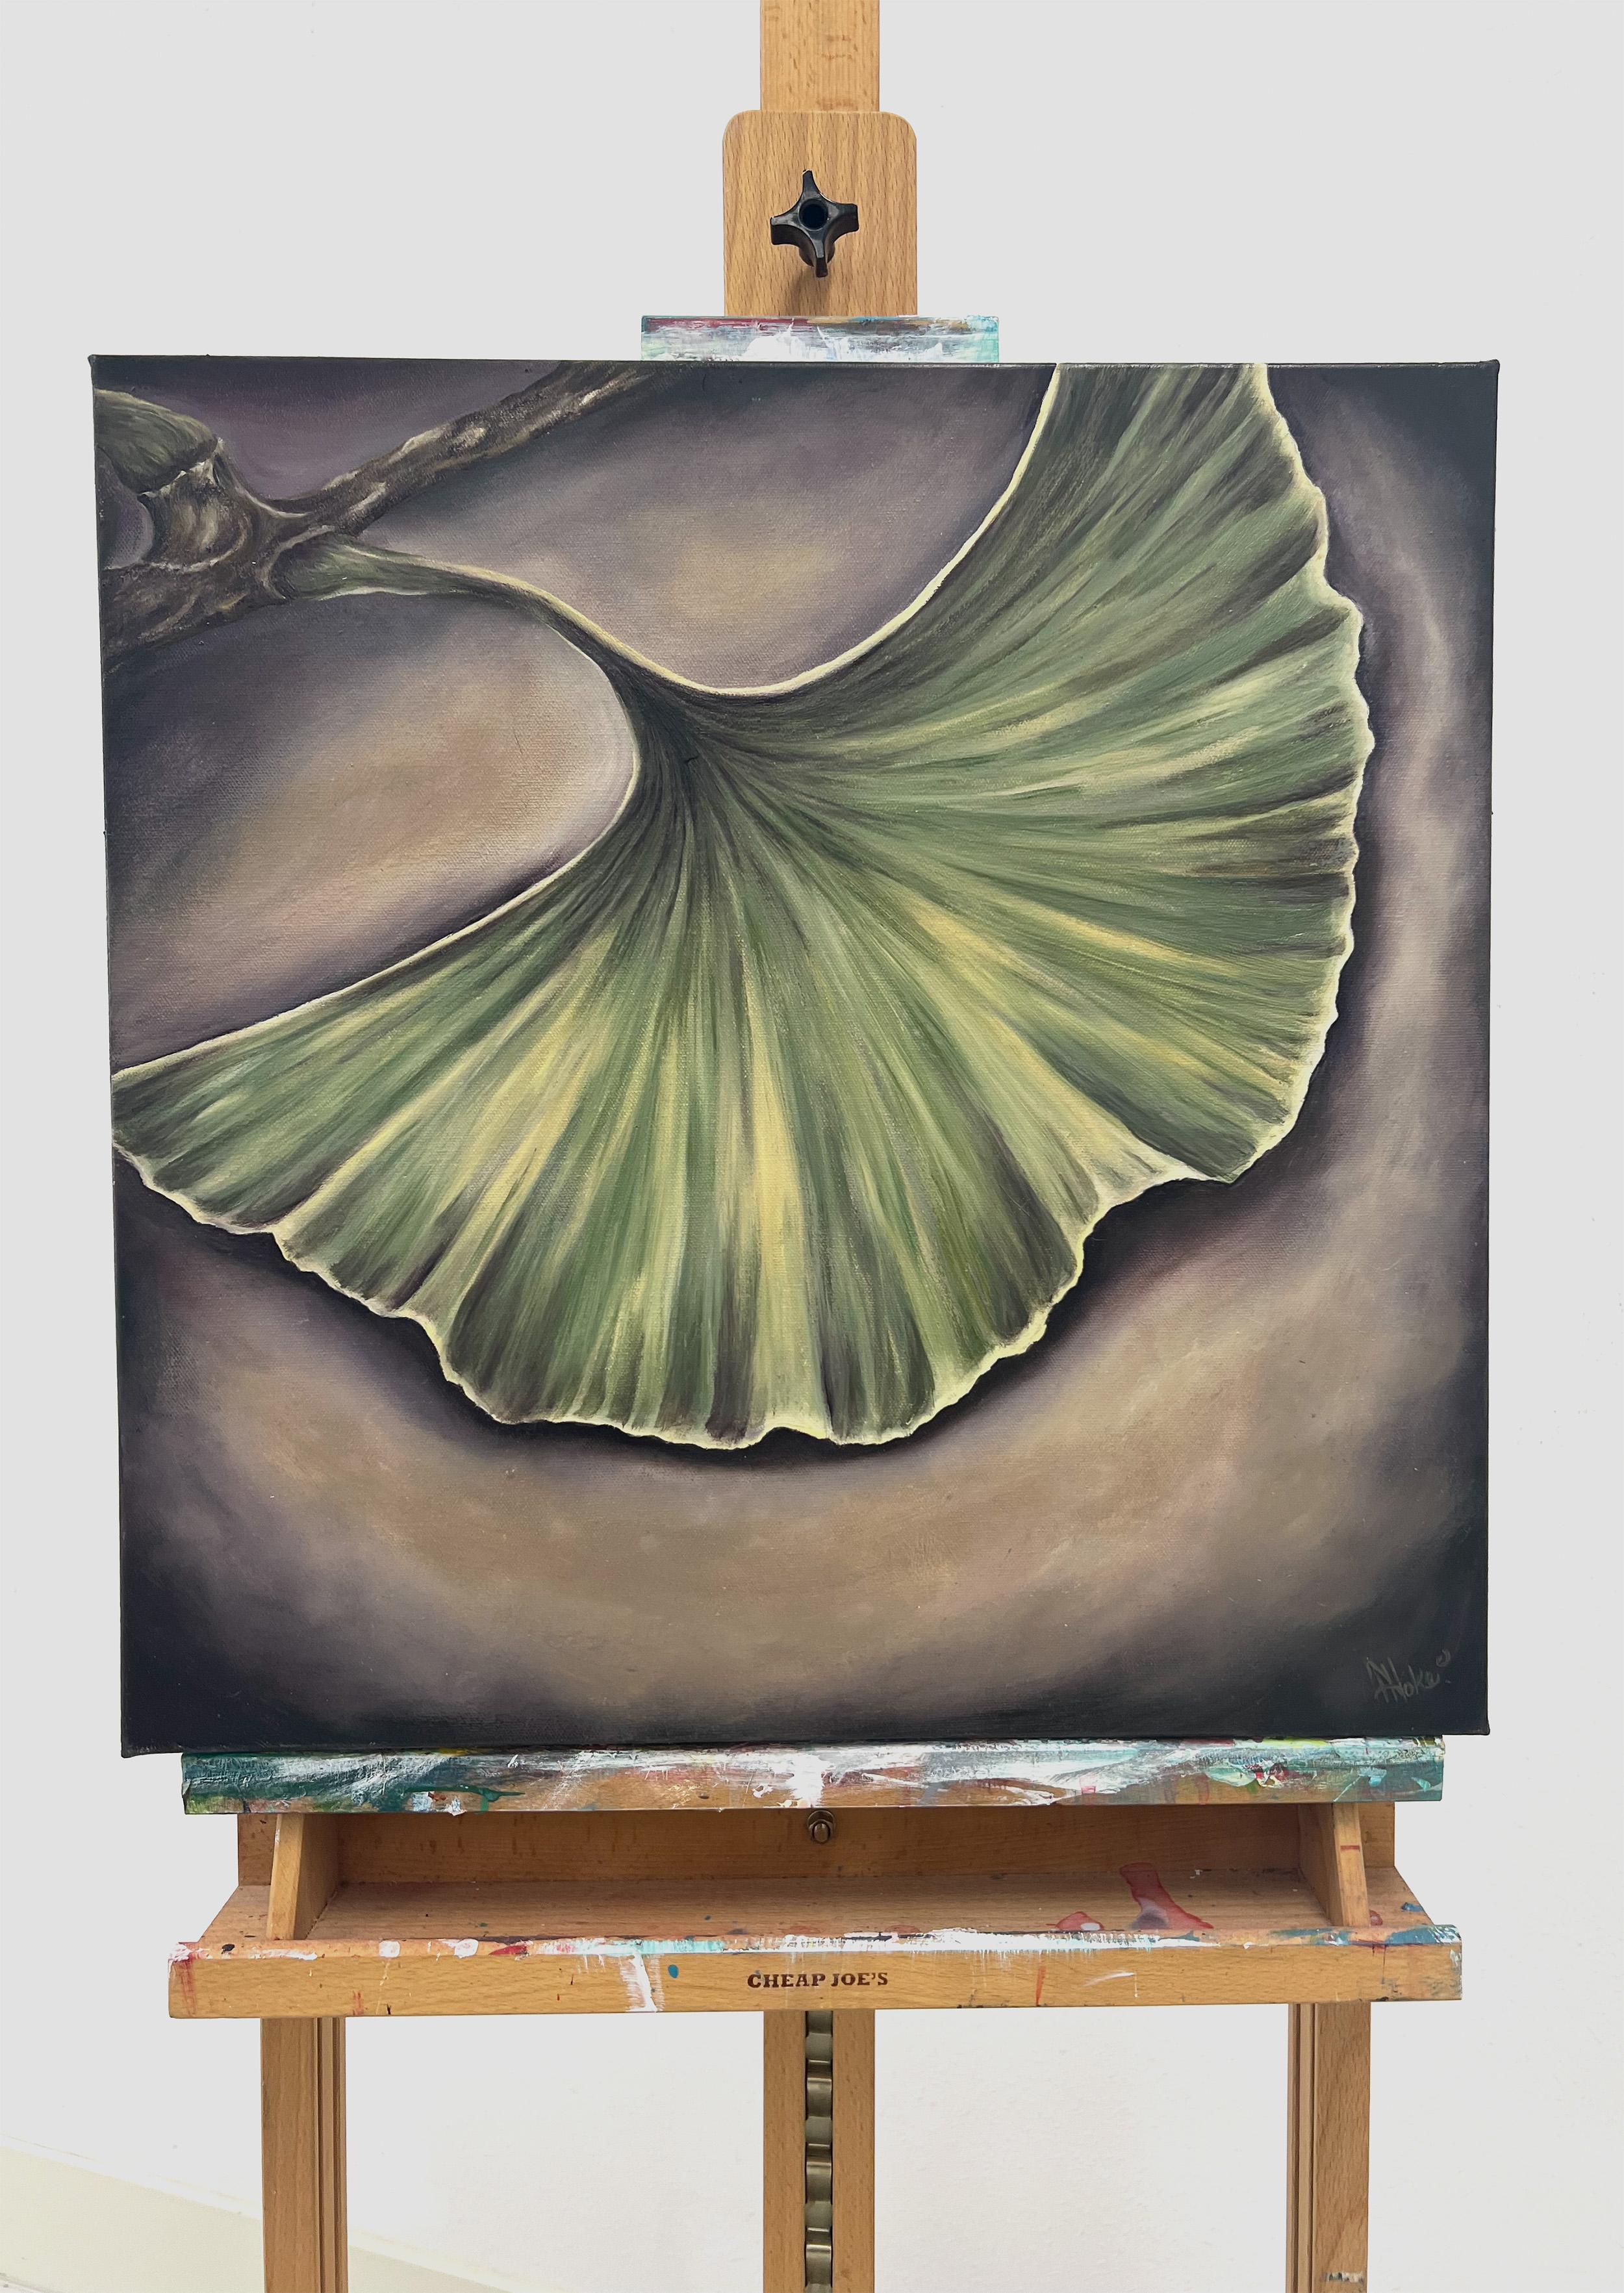 <p>Kommentare der Künstlerin<br />Die Künstlerin Pamela Hoke stellt ein eindrucksvolles Bild eines Gingko-Blattes aus. Ein starker malerischer Ausdruck der viel verehrten und dokumentierten alten Pflanze. Ihre stilistische Pinselführung und die